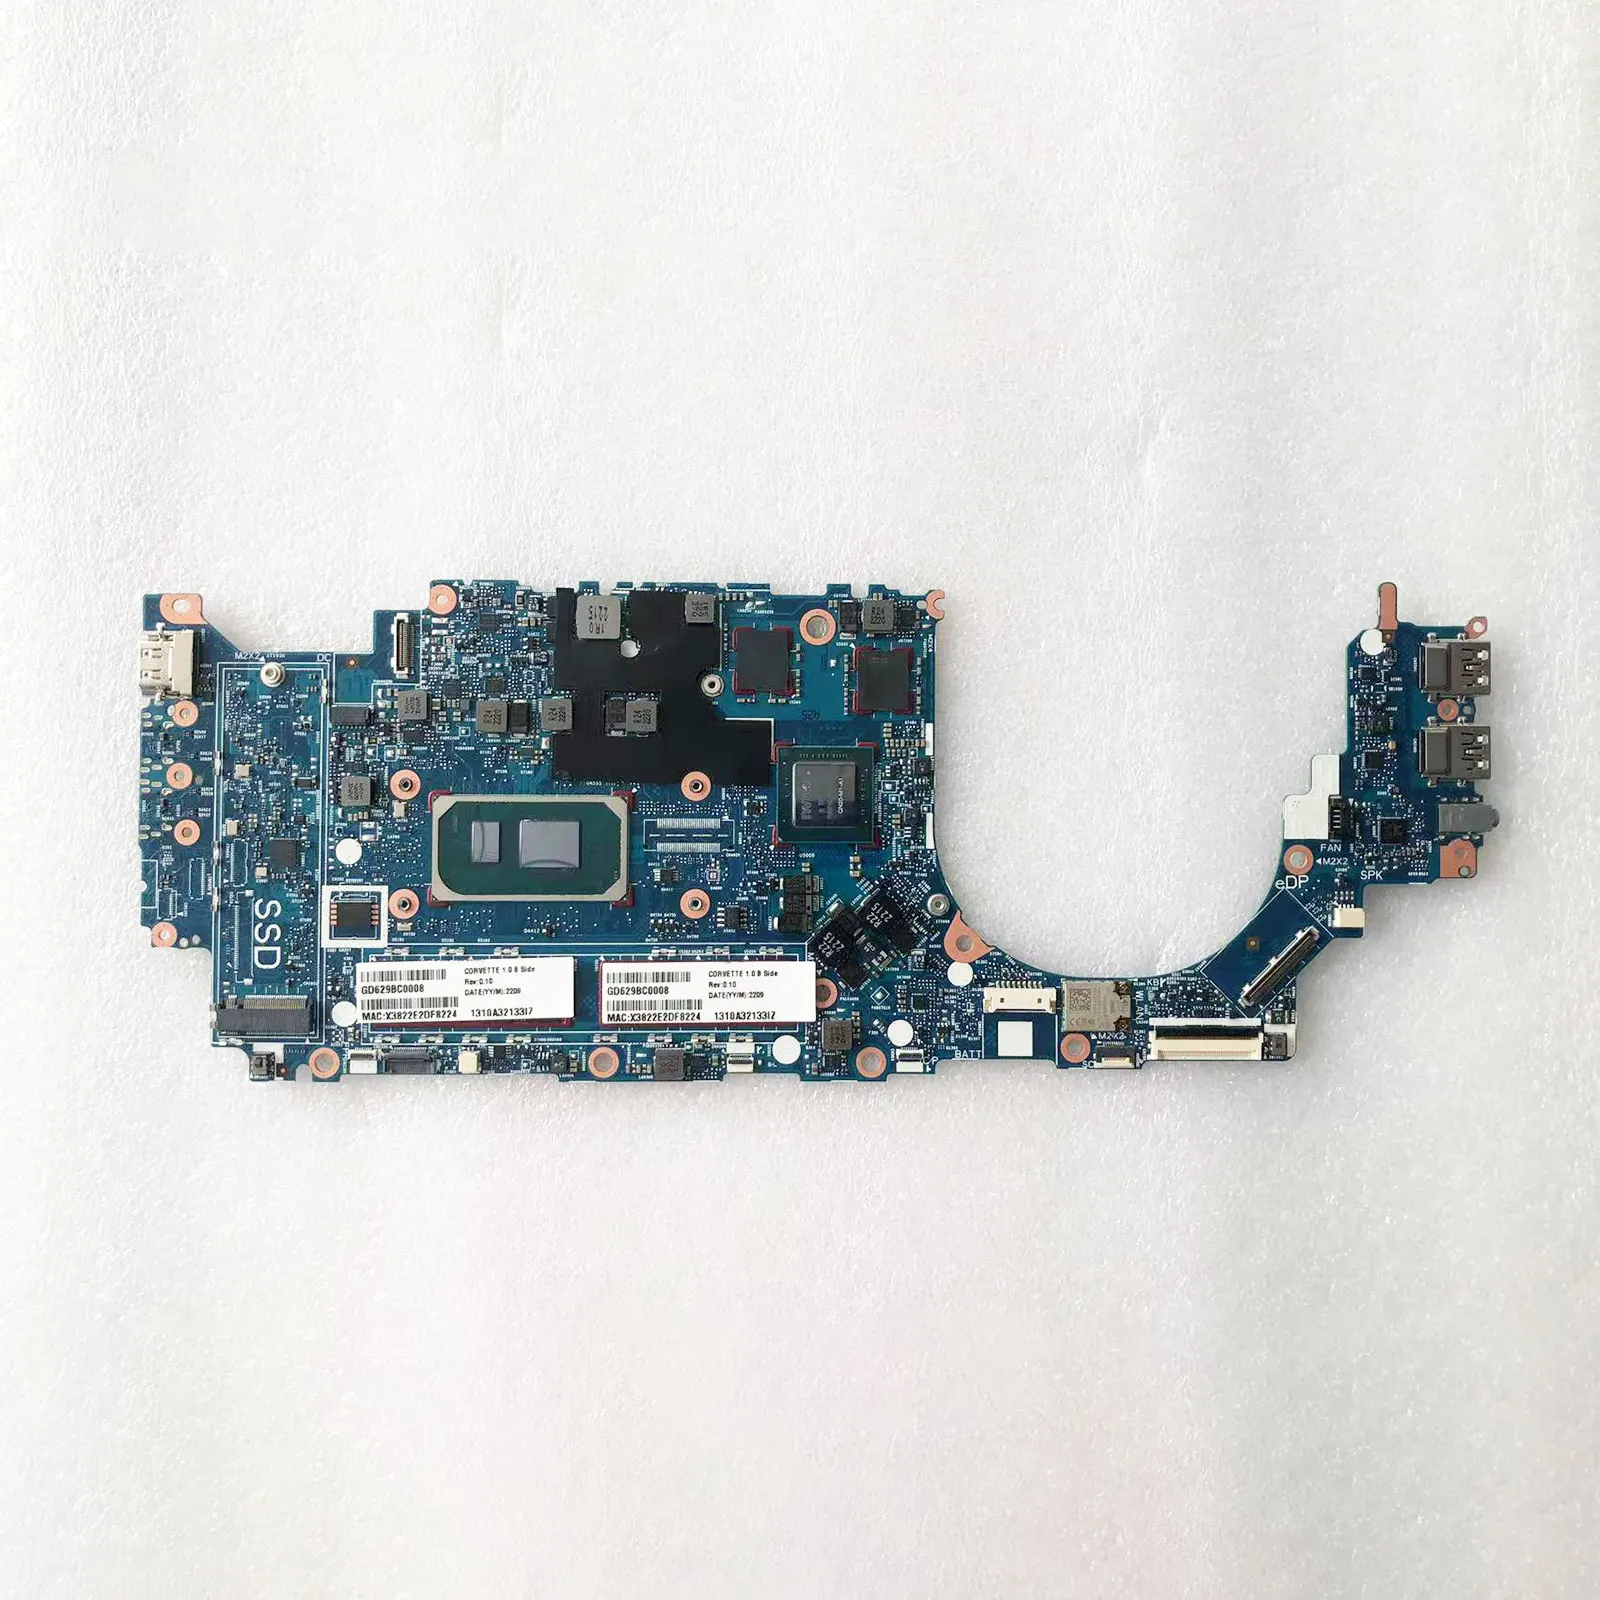 I7-1185G7 32GB עבור HP Zbook גחלילית 14 G8 לוח אם למחשב נייד תעשייתי כפול לננובו רדמי Note 10 5g לוח אם אינטל 4 DDR4